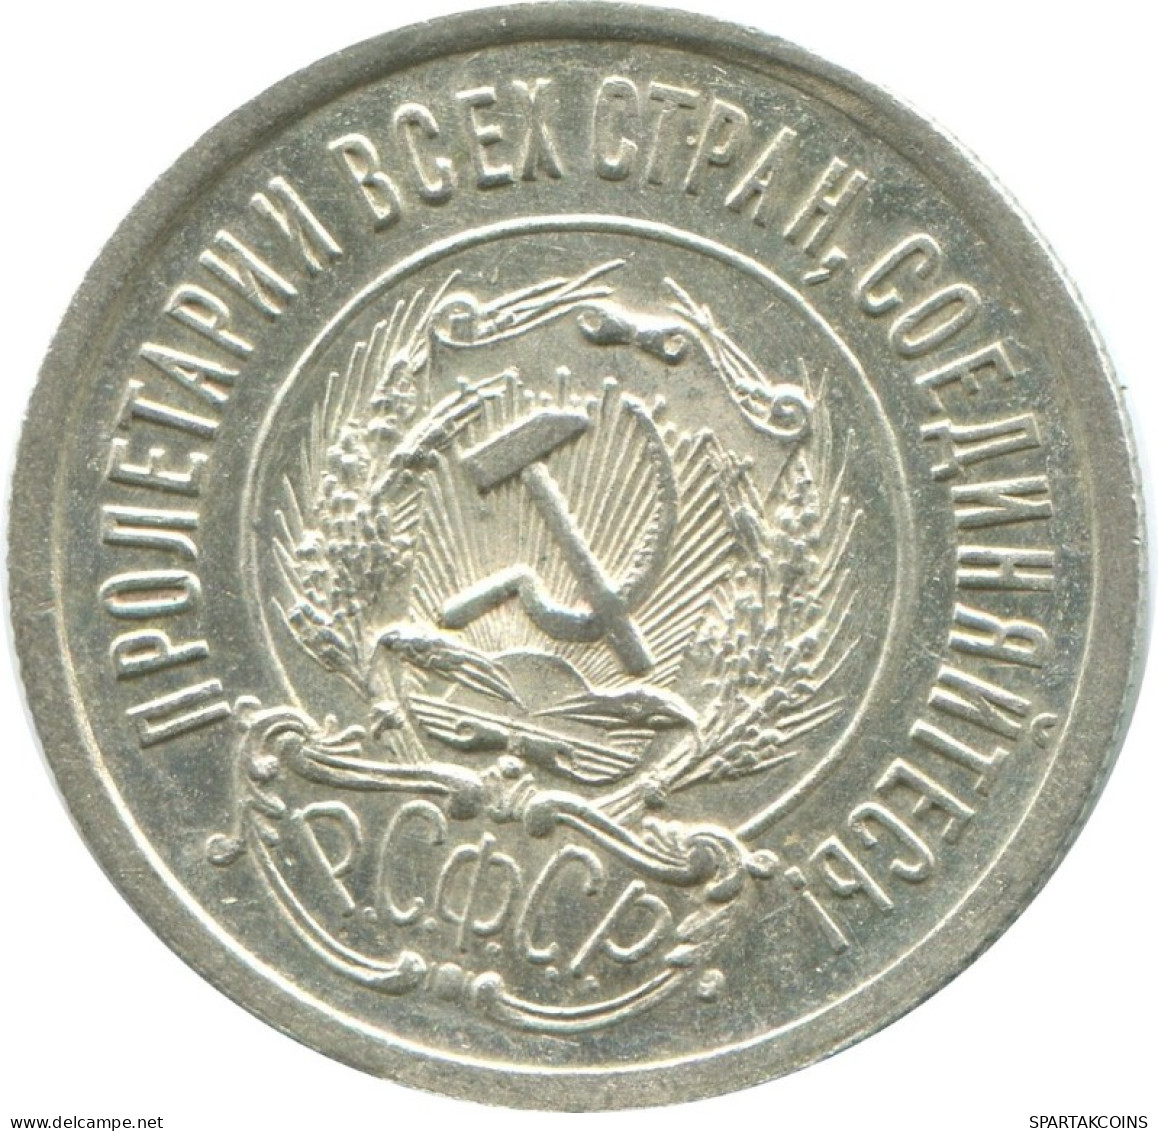 20 KOPEKS 1923 RUSSIA RSFSR SILVER Coin HIGH GRADE #AF666.U.A - Russland